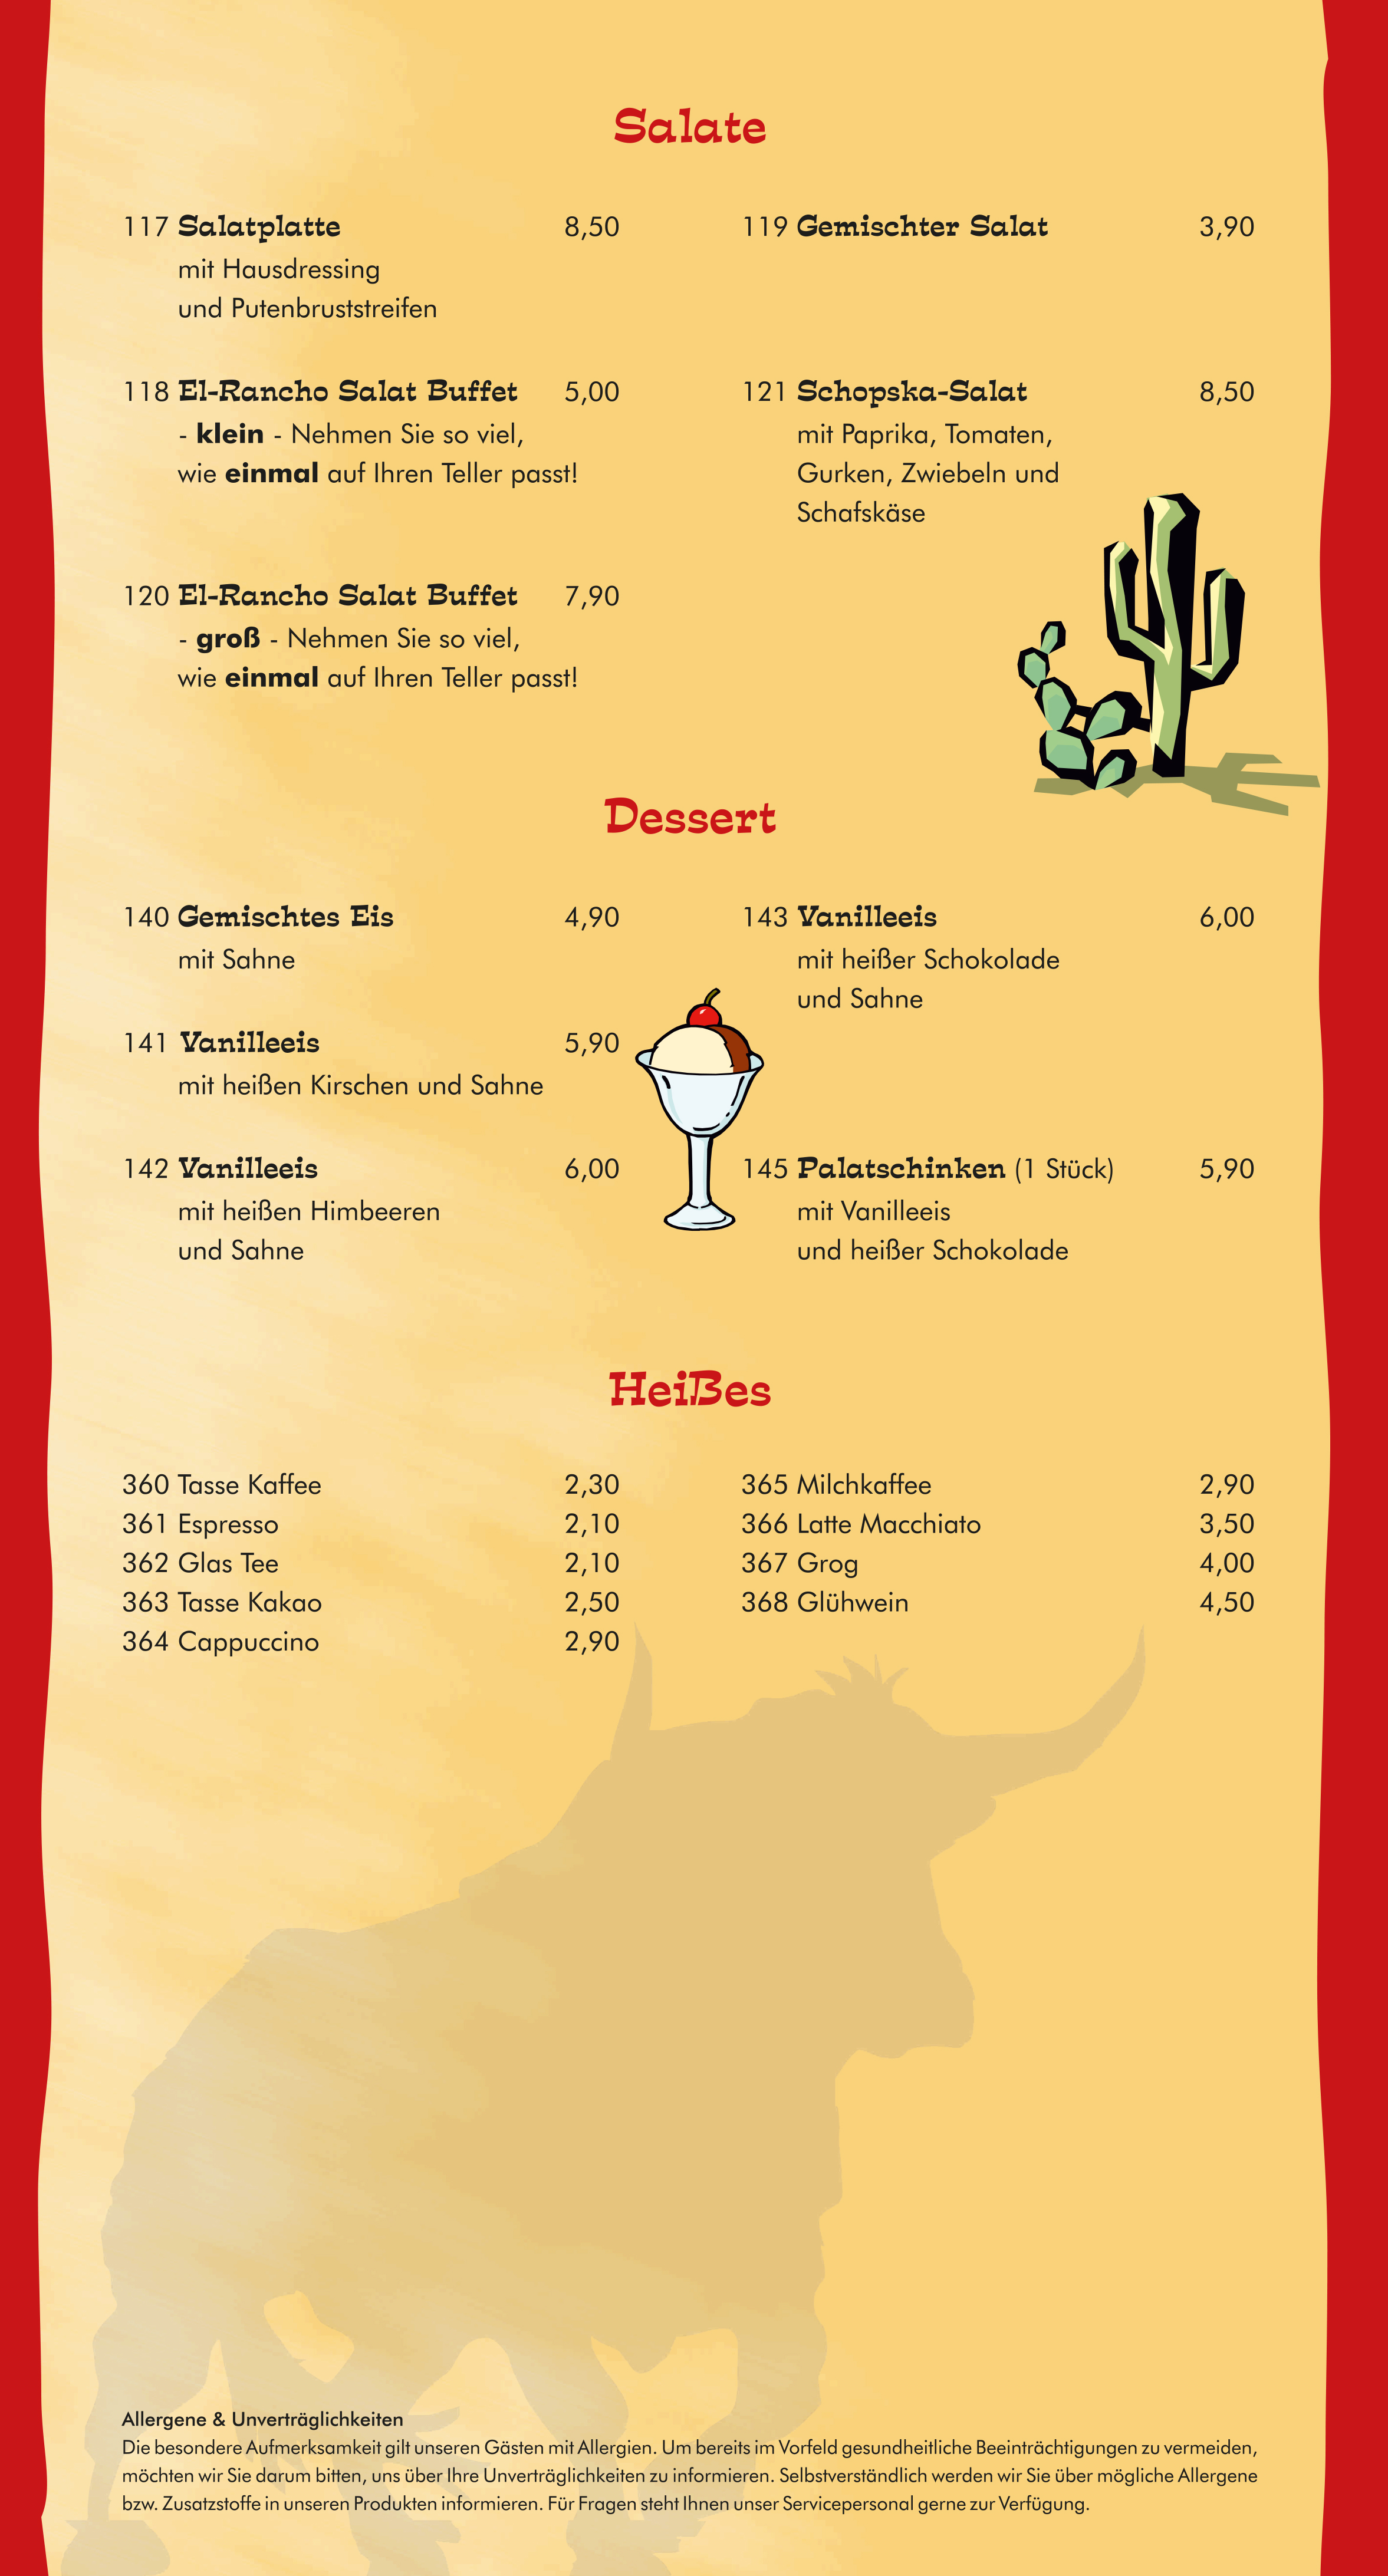 Seite 6 von 6 der Speisekarte vom El-Rancho Steakhouse in Bochum